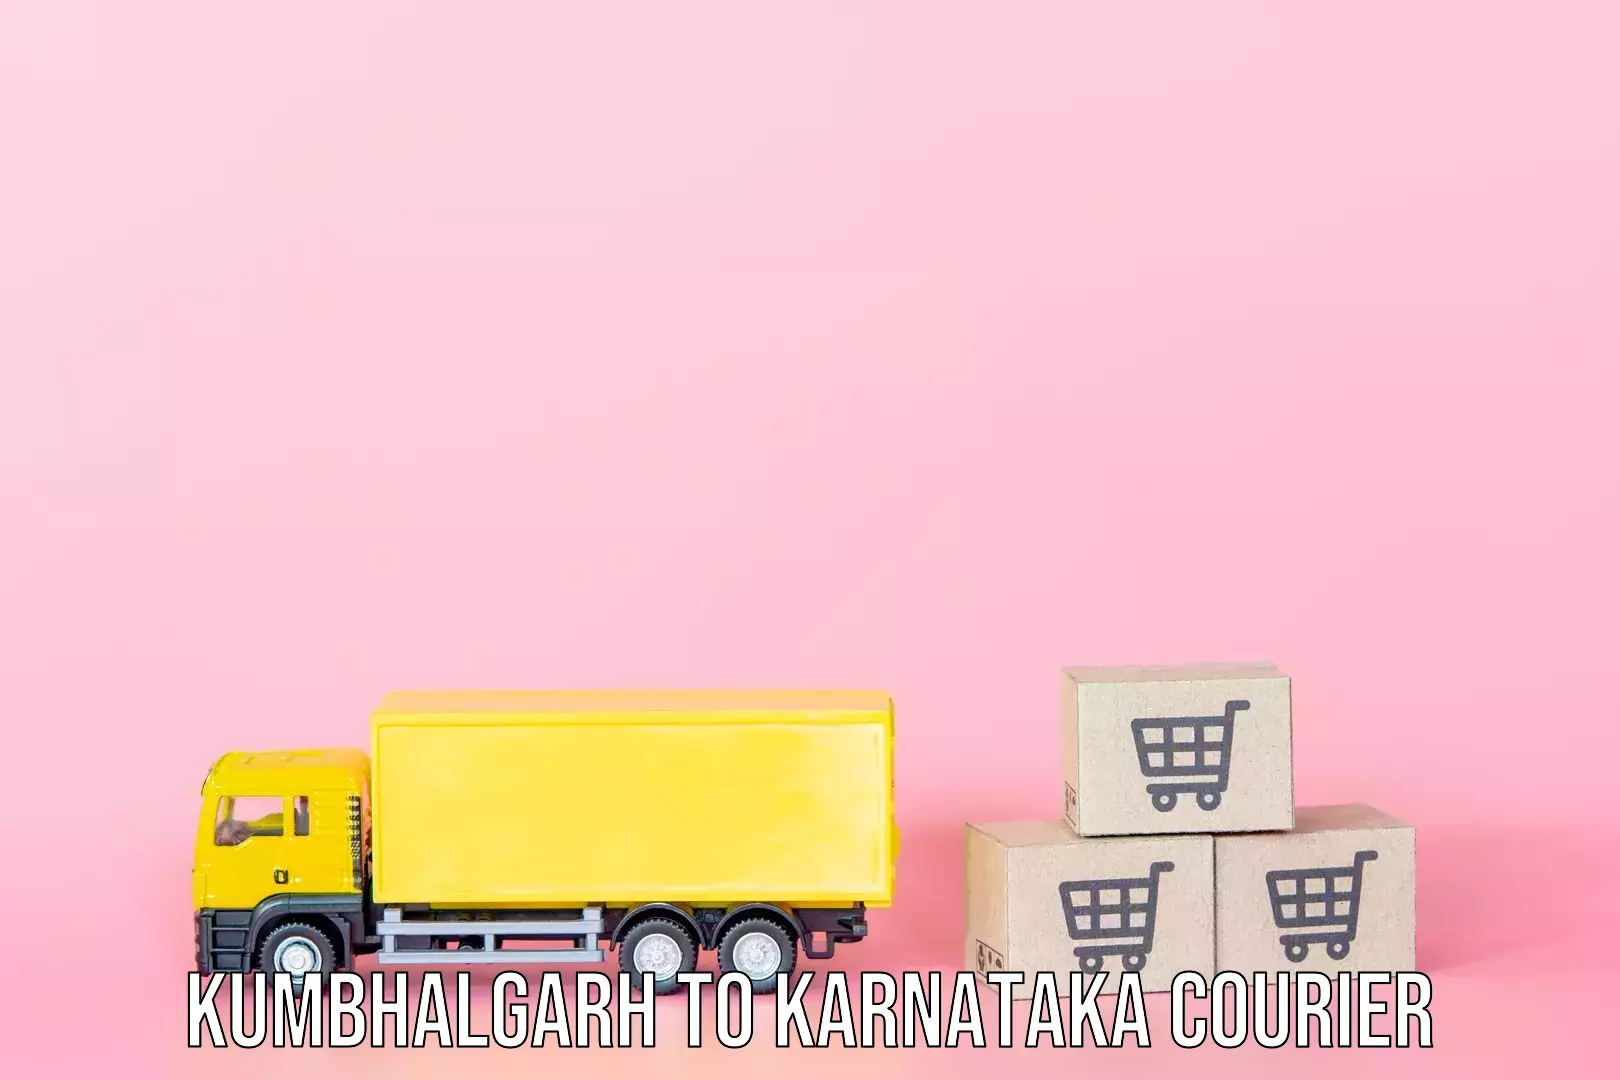 Luggage transport service Kumbhalgarh to Bengaluru